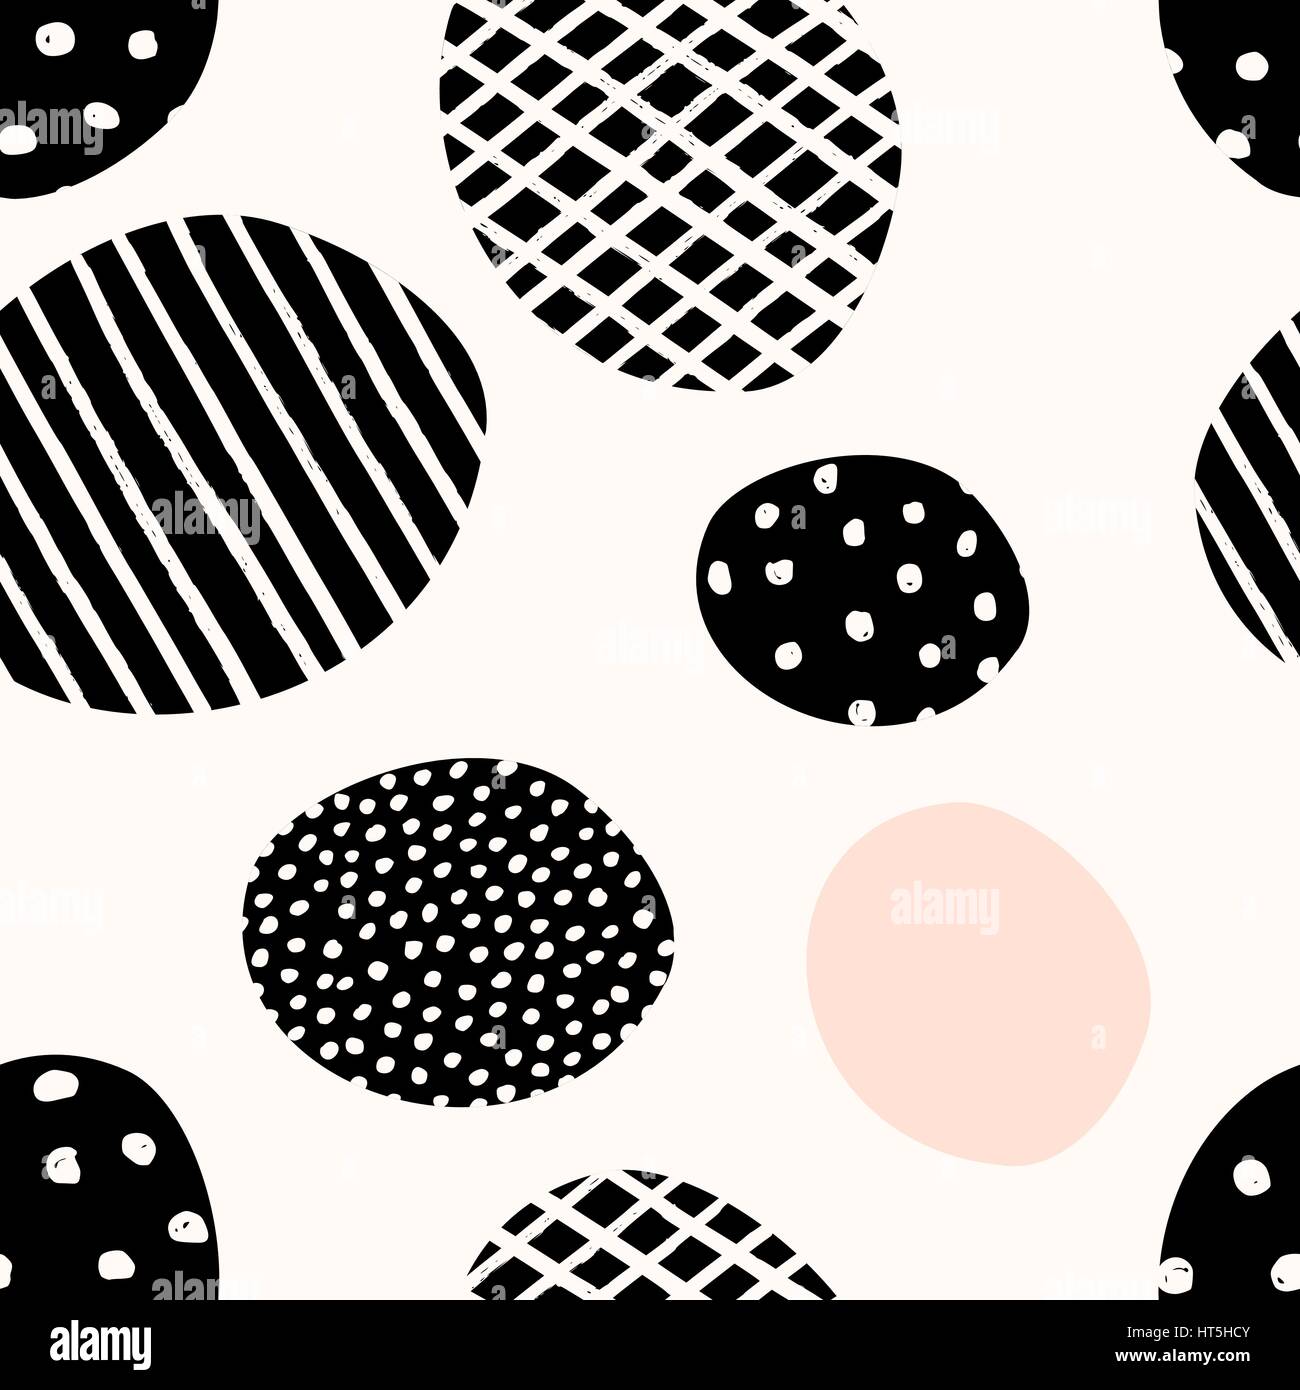 Nahtlose abstrakte, sich wiederholende Muster mit geometrischen Formen in schwarz auf weißem Hintergrund. Stock Vektor